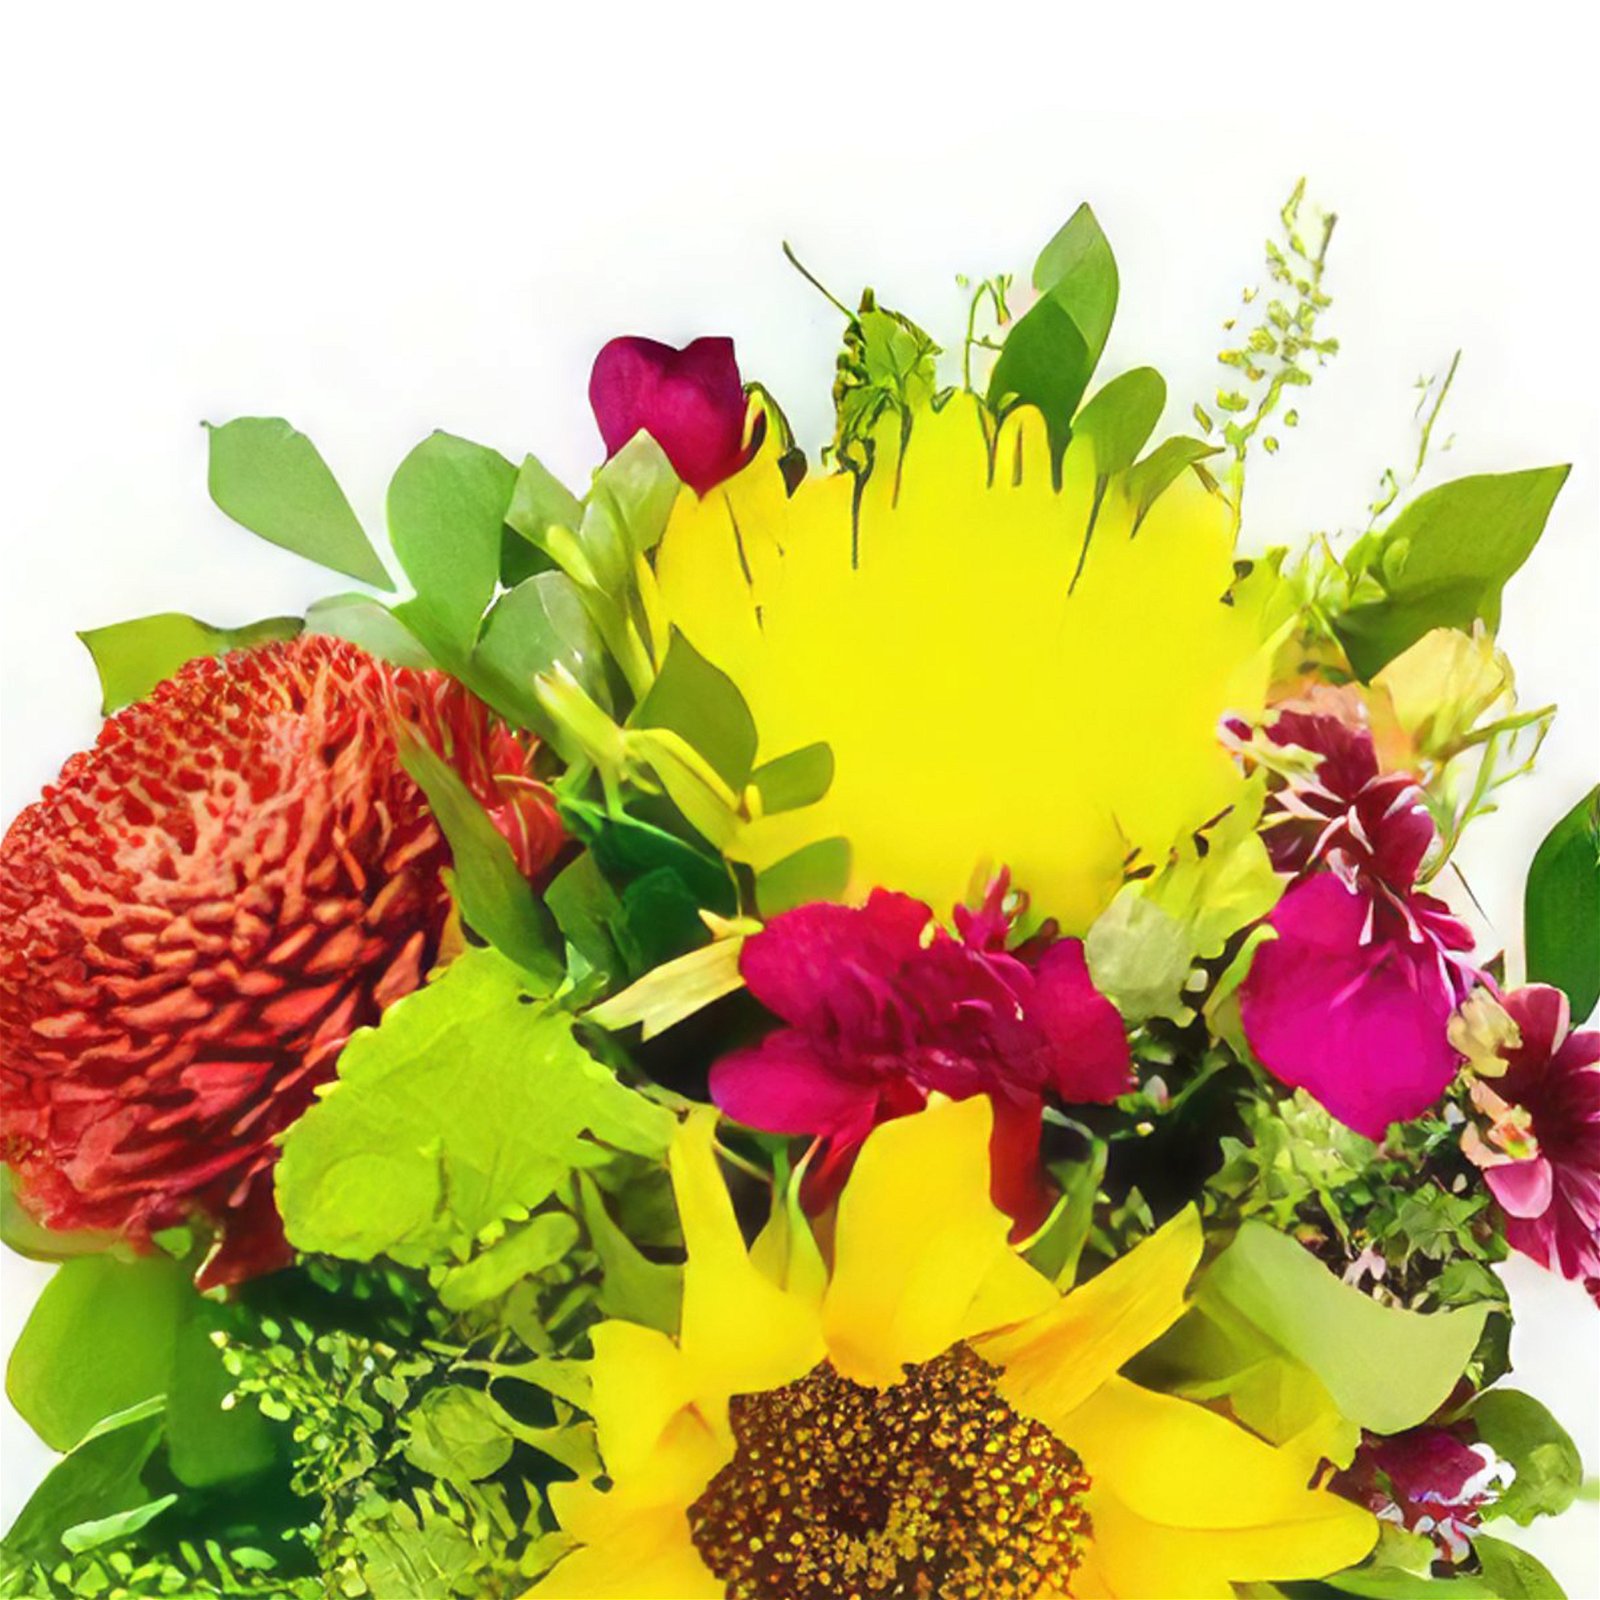 Corralillo Blumen Florist- Frühlingsliebe Bouquet/Blumenschmuck